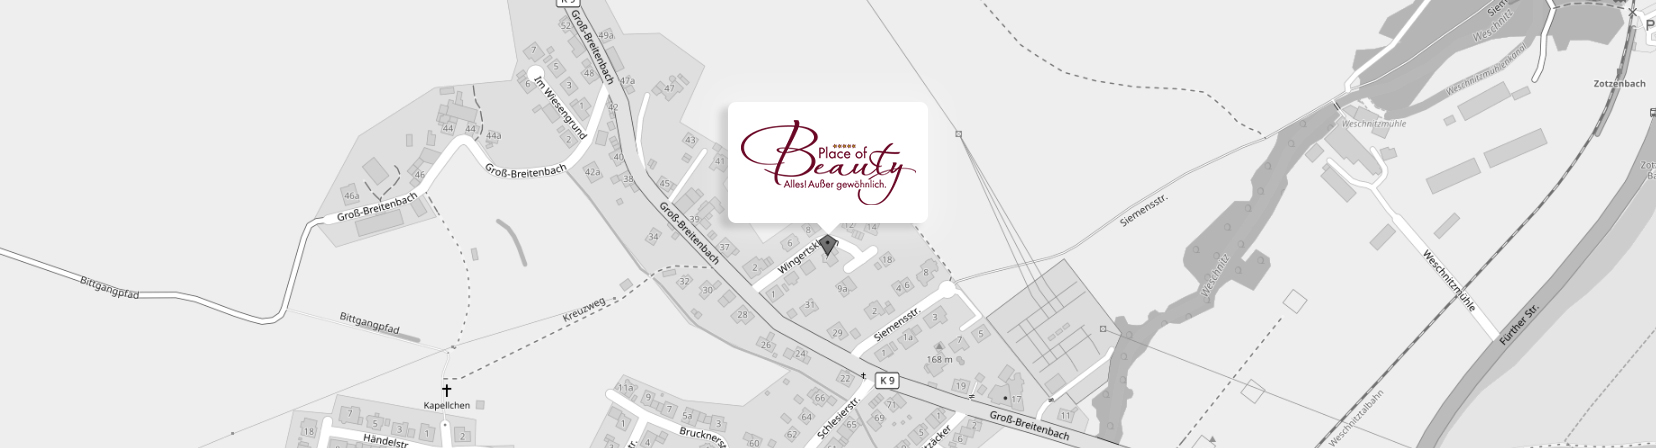 Place of Beauty Karte